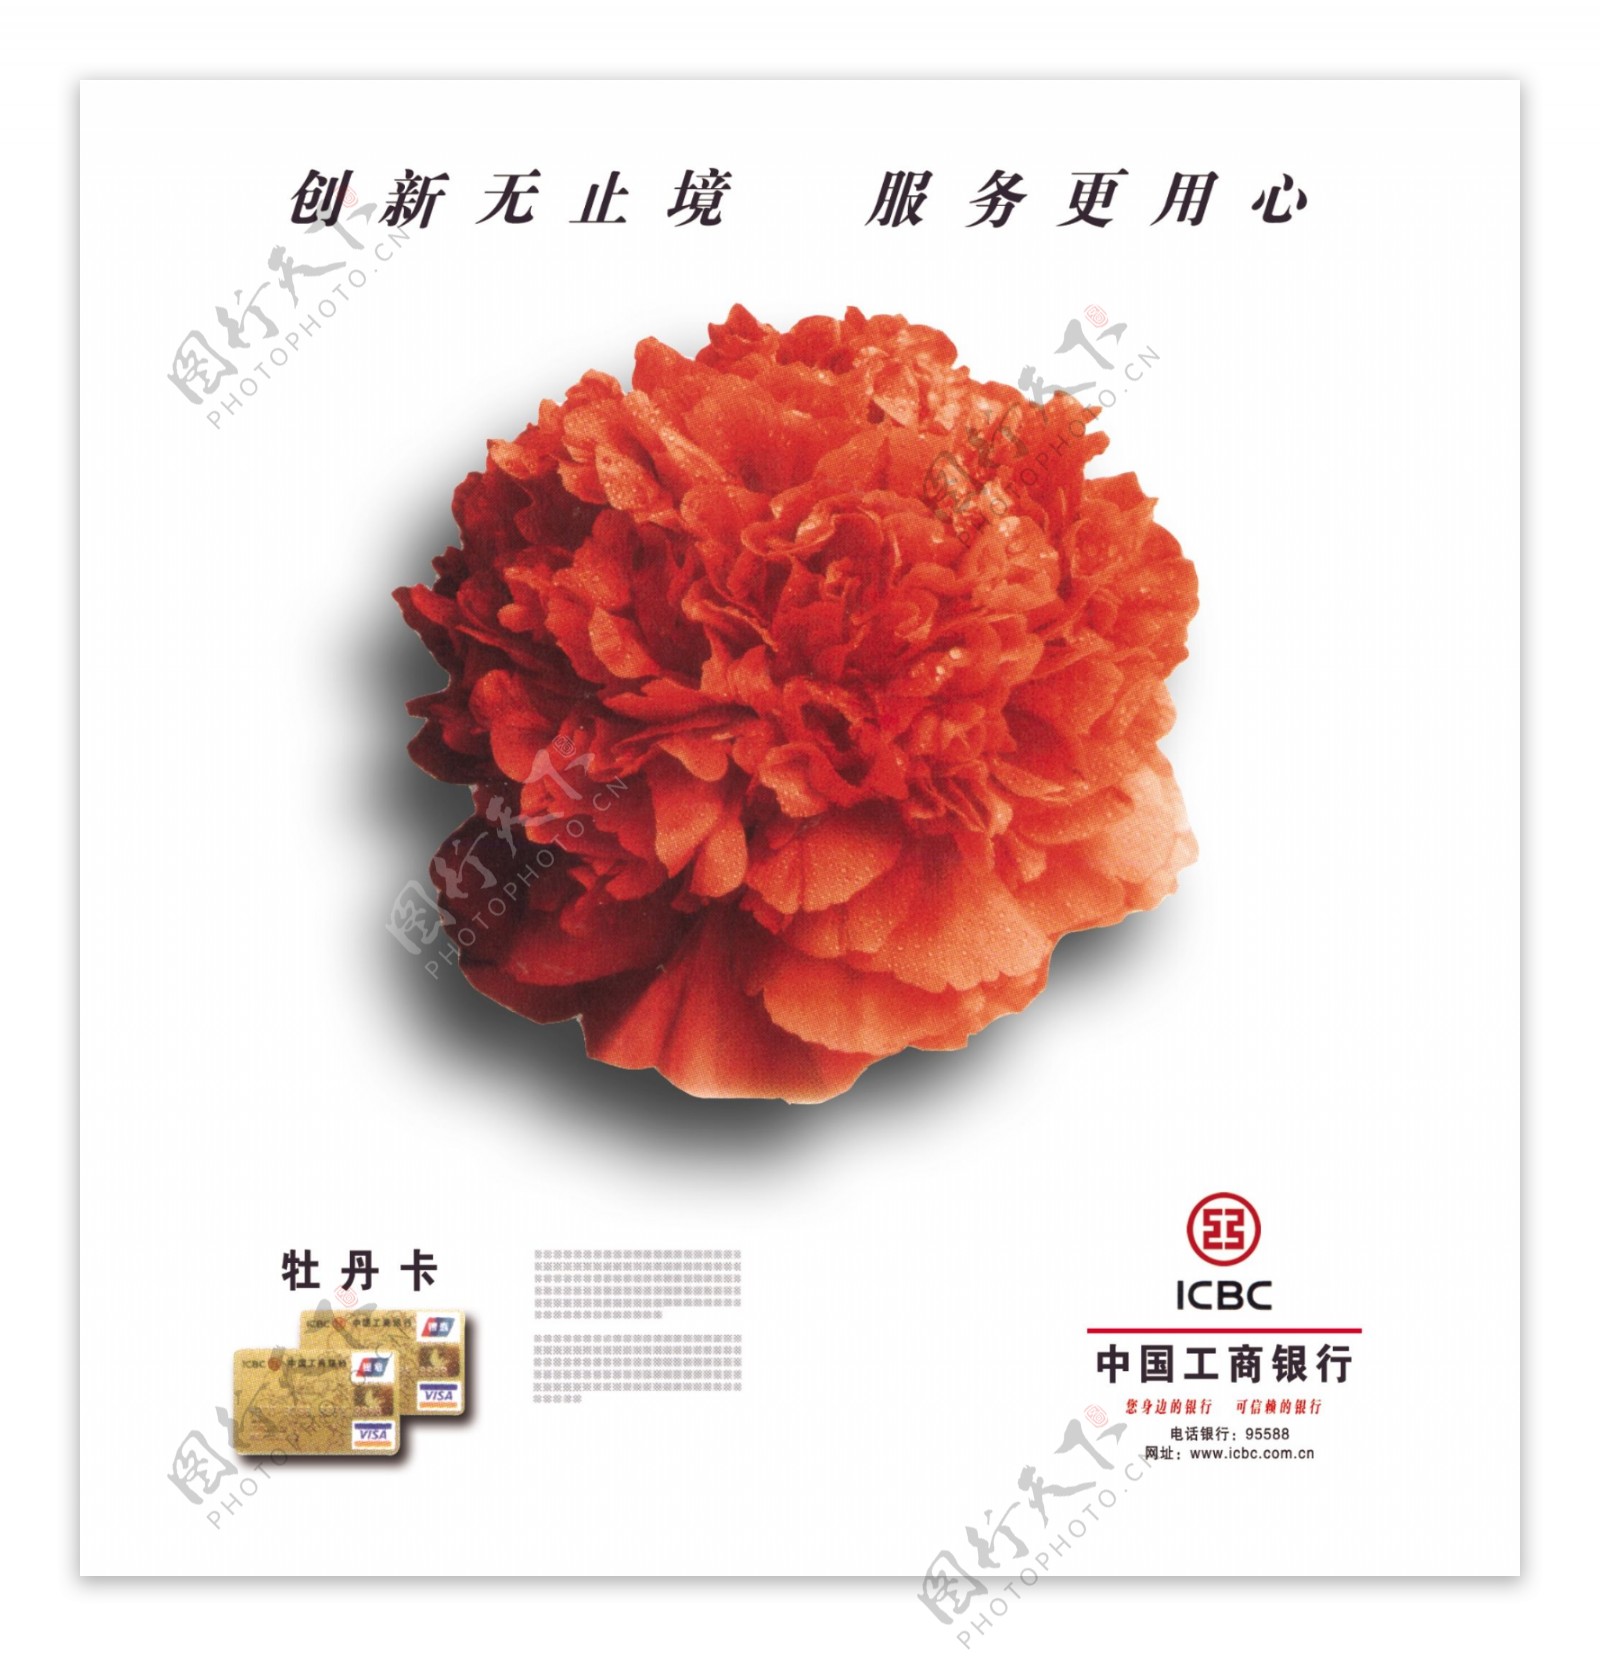 中国工商银行牡丹卡宣传海报